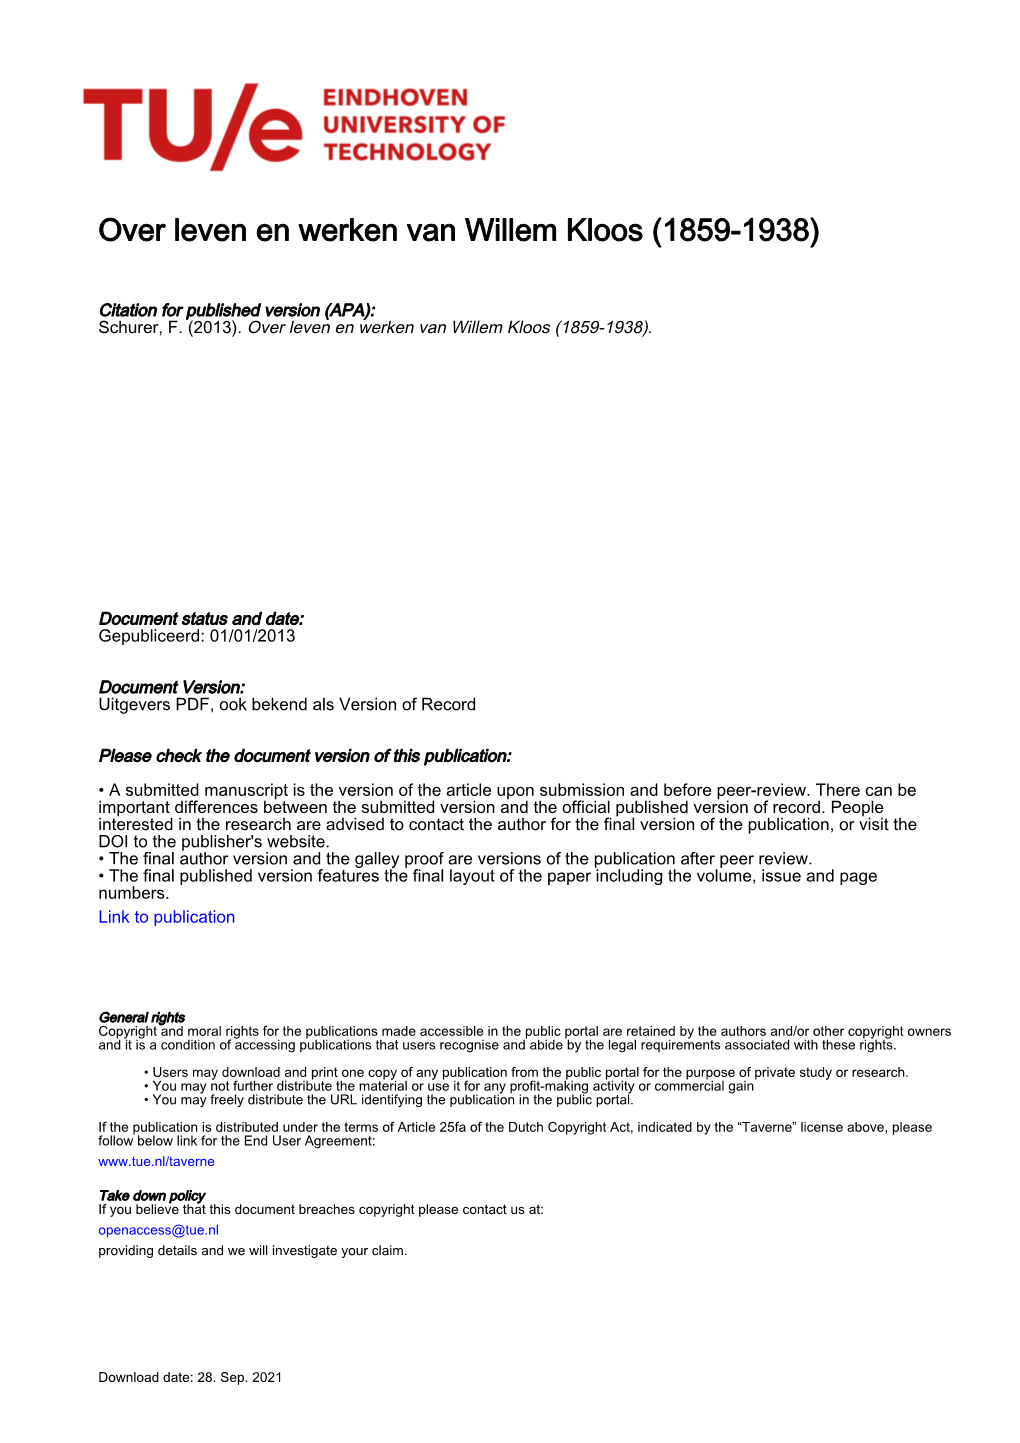 Over Leven En Werken Van Willem Kloos (1859-1938)